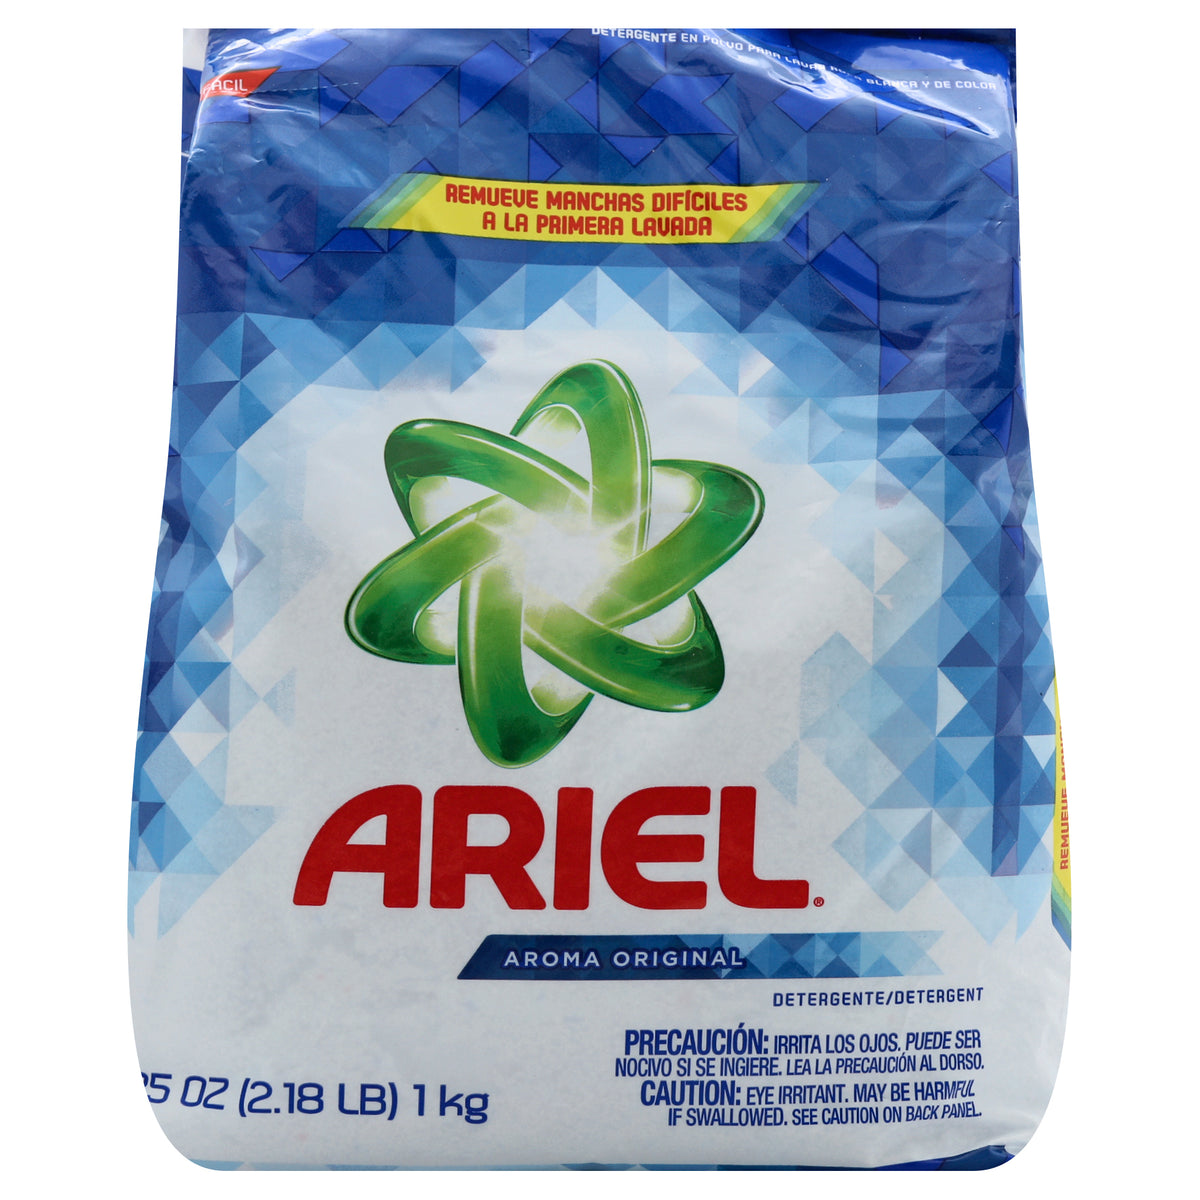  Ariel Laundry Detergent, 35.27 Ounce, Original Scent